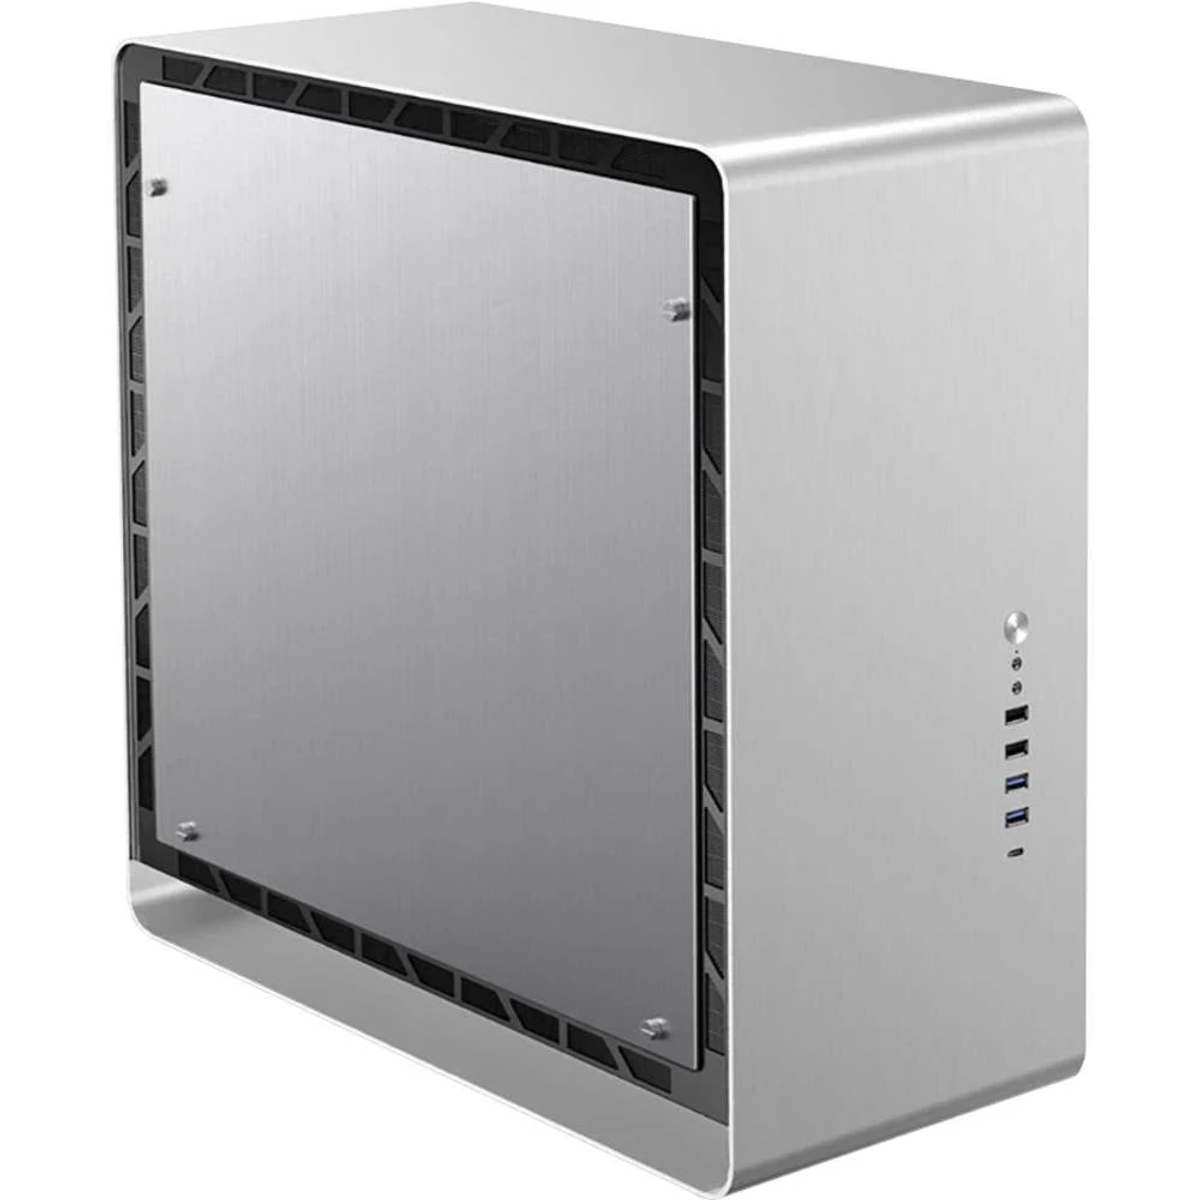 JONSBO UMX6 AL Silver PC Silber Gehäuse